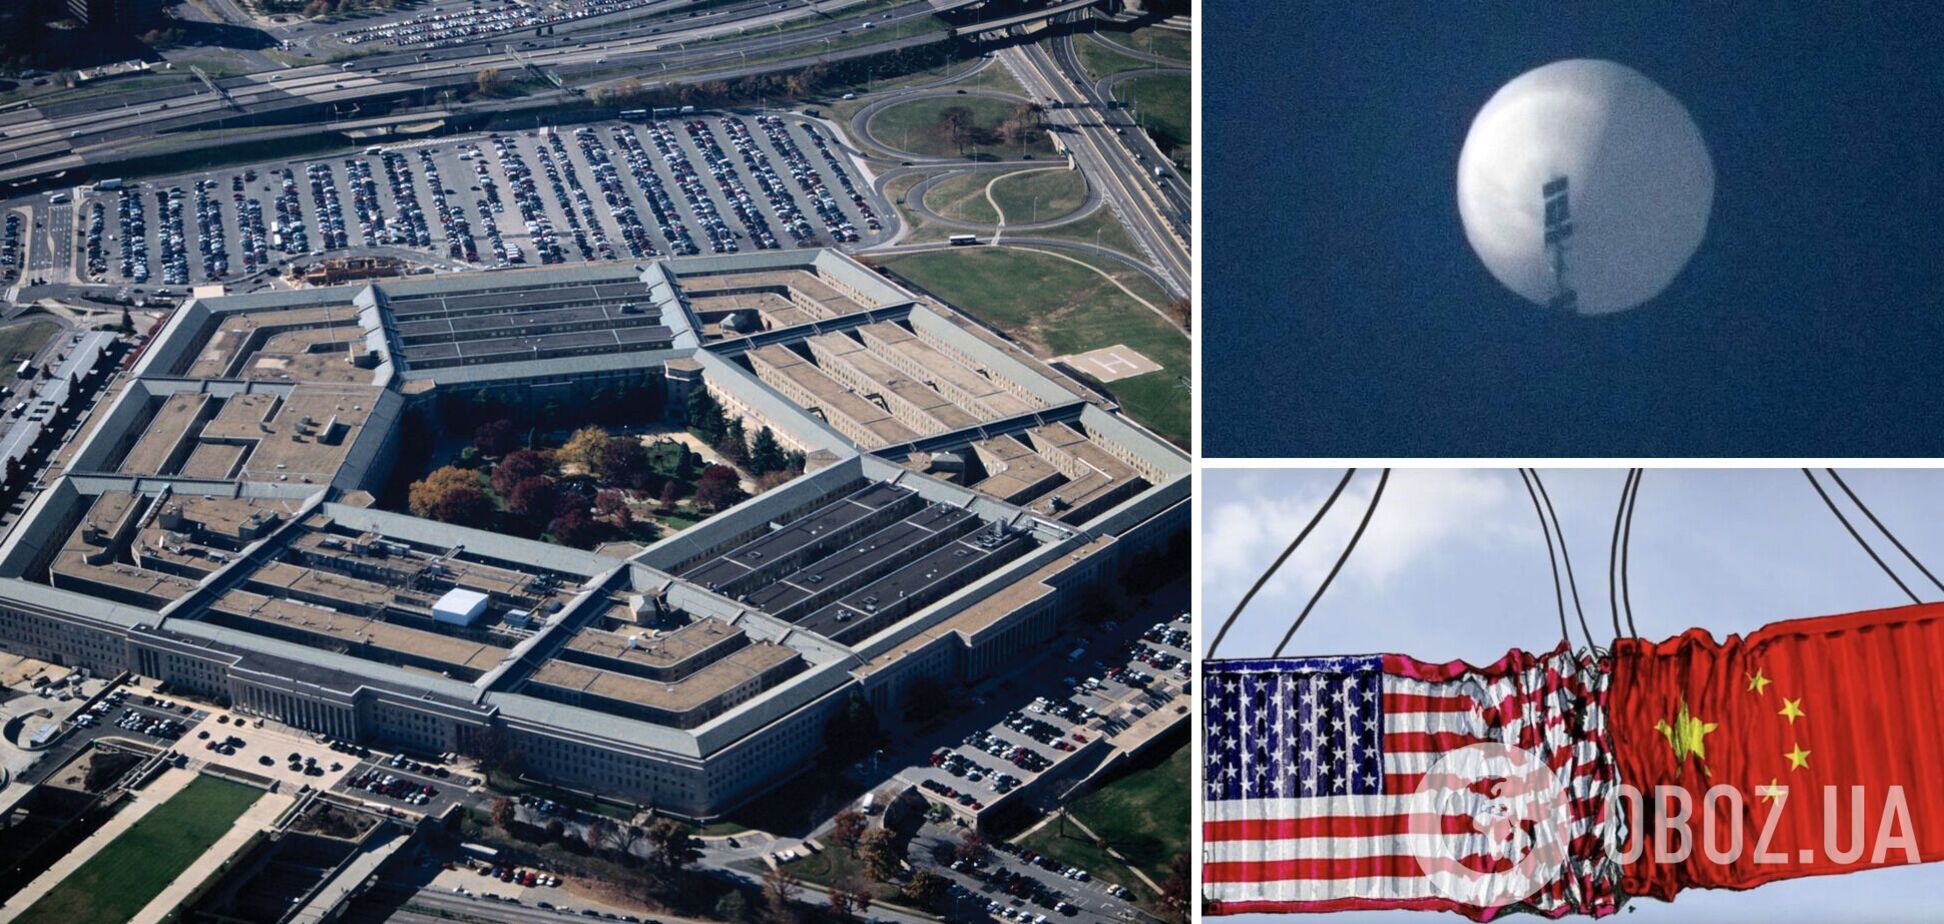 Пентагон: китайский аэростат использовали для наблюдения за стратегическими объектами США